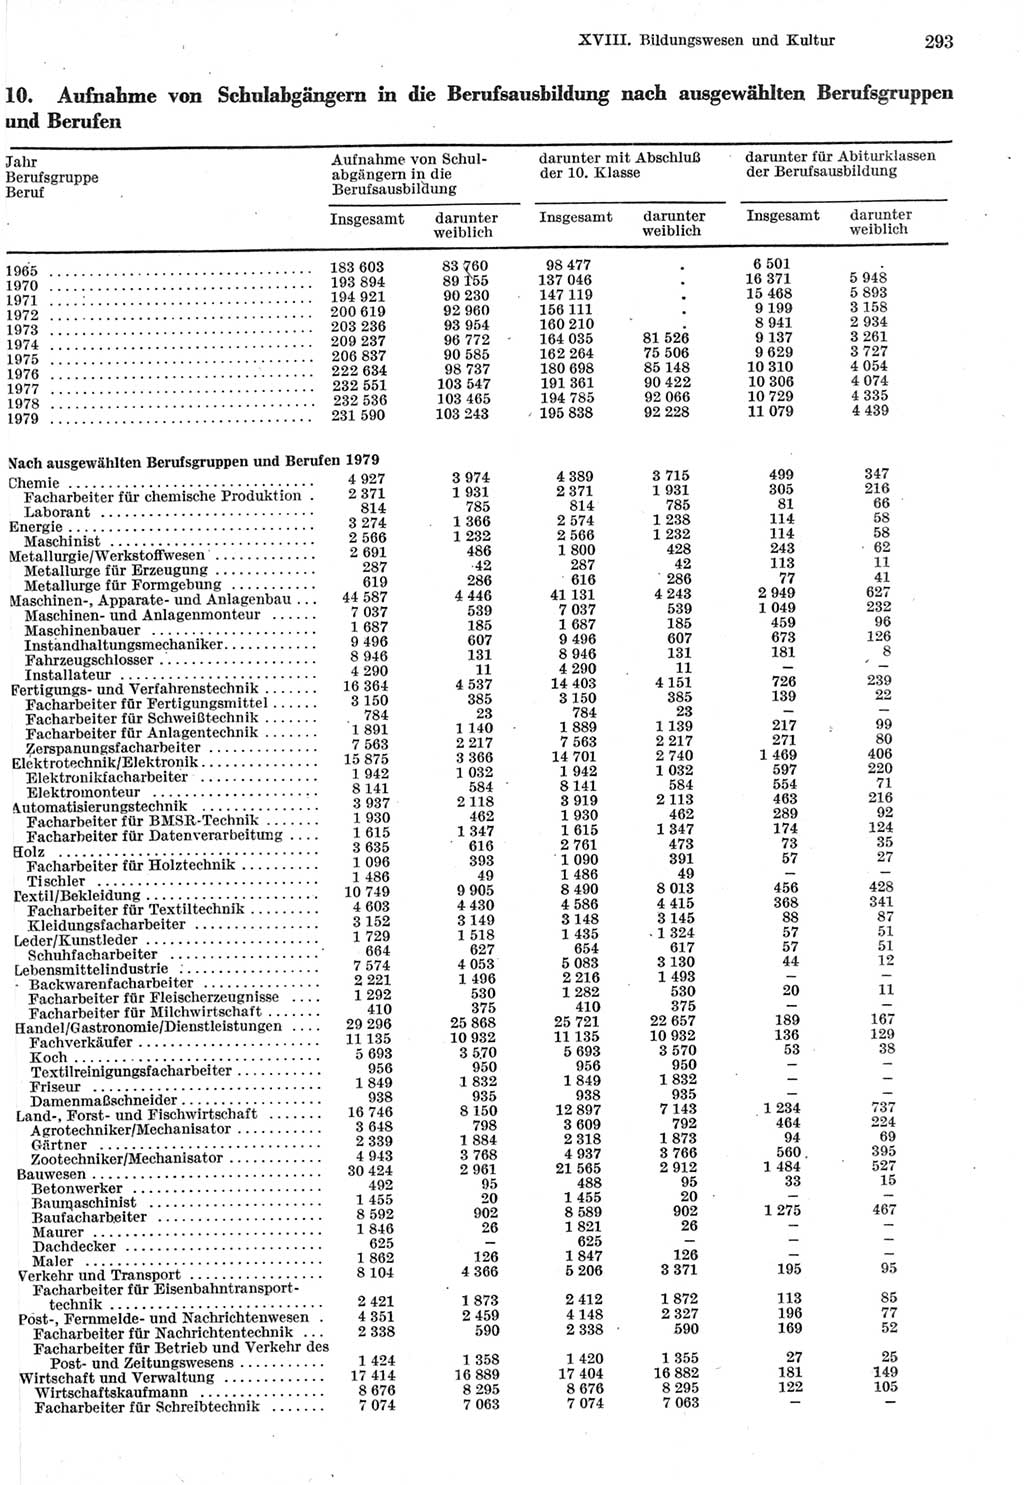 Statistisches Jahrbuch der Deutschen Demokratischen Republik (DDR) 1980, Seite 293 (Stat. Jb. DDR 1980, S. 293)